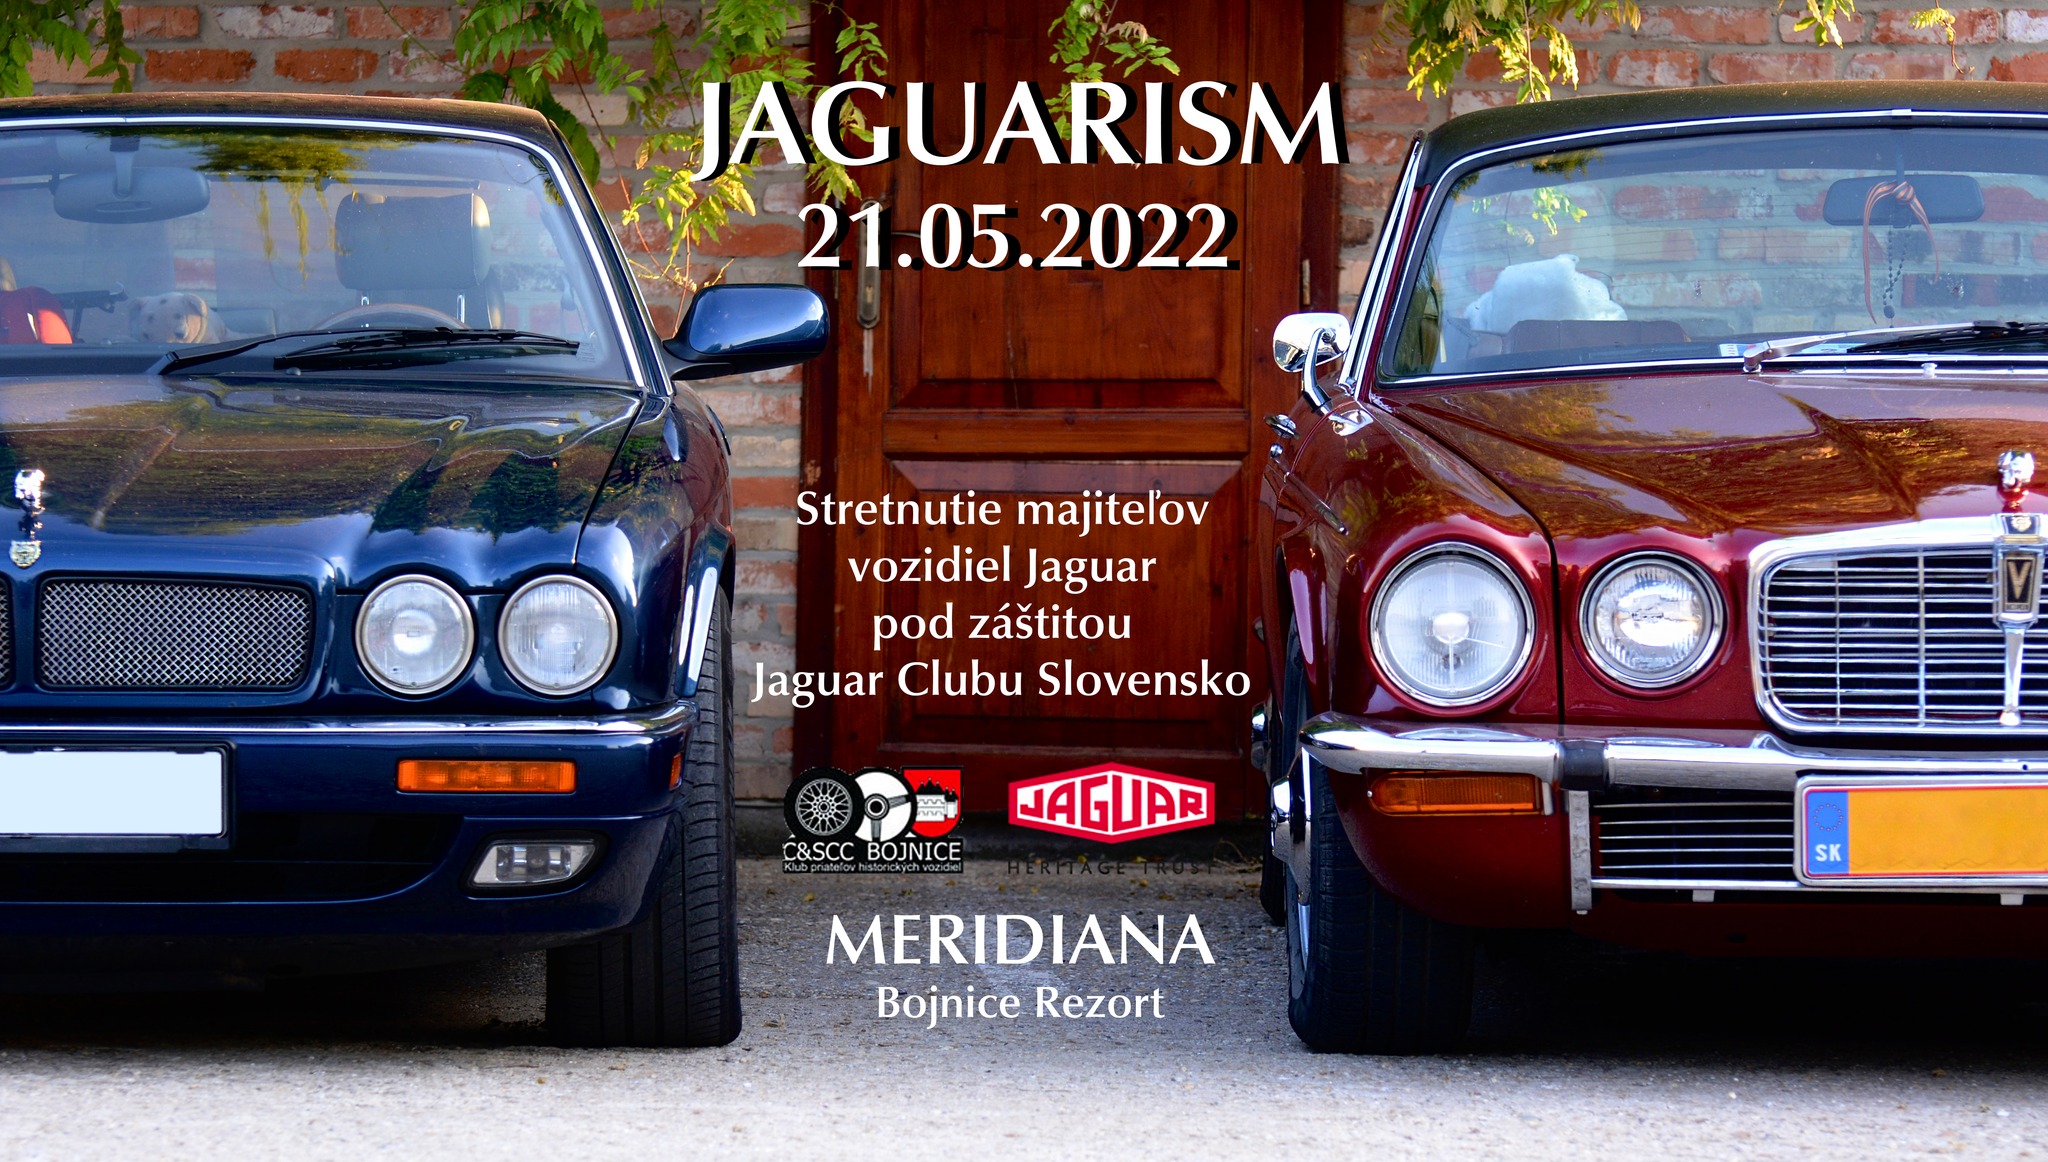 JAGUARISM - Stretnutie majiteľov vozidiel Jaguar - Jaguar Club Slovensko